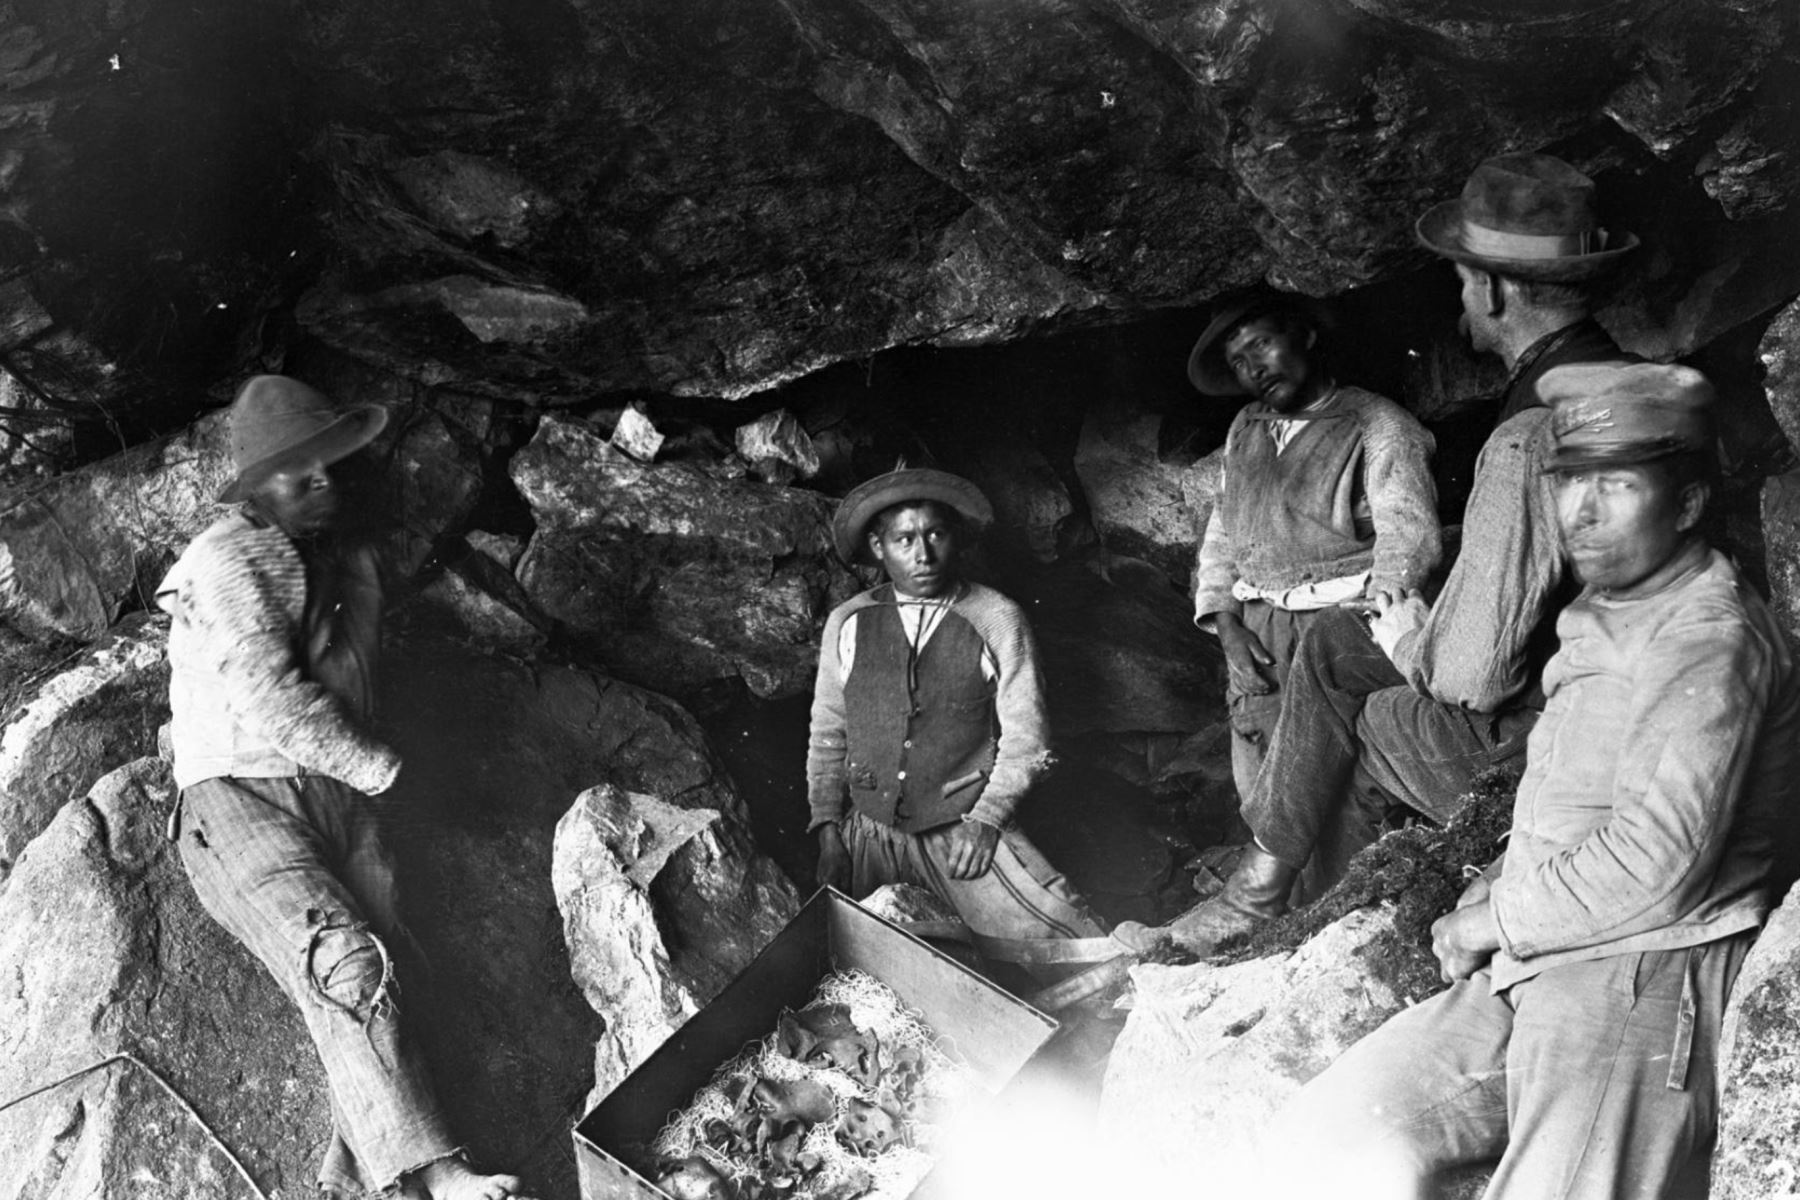 Una vista de linterna del interior de la cueva No. 11, que muestra al osteólogo, el Dr. Eaton, y sus ayudantes indios durante la excavación de un esqueleto humano.
Foto:  Hiram Bingham / National Geographic